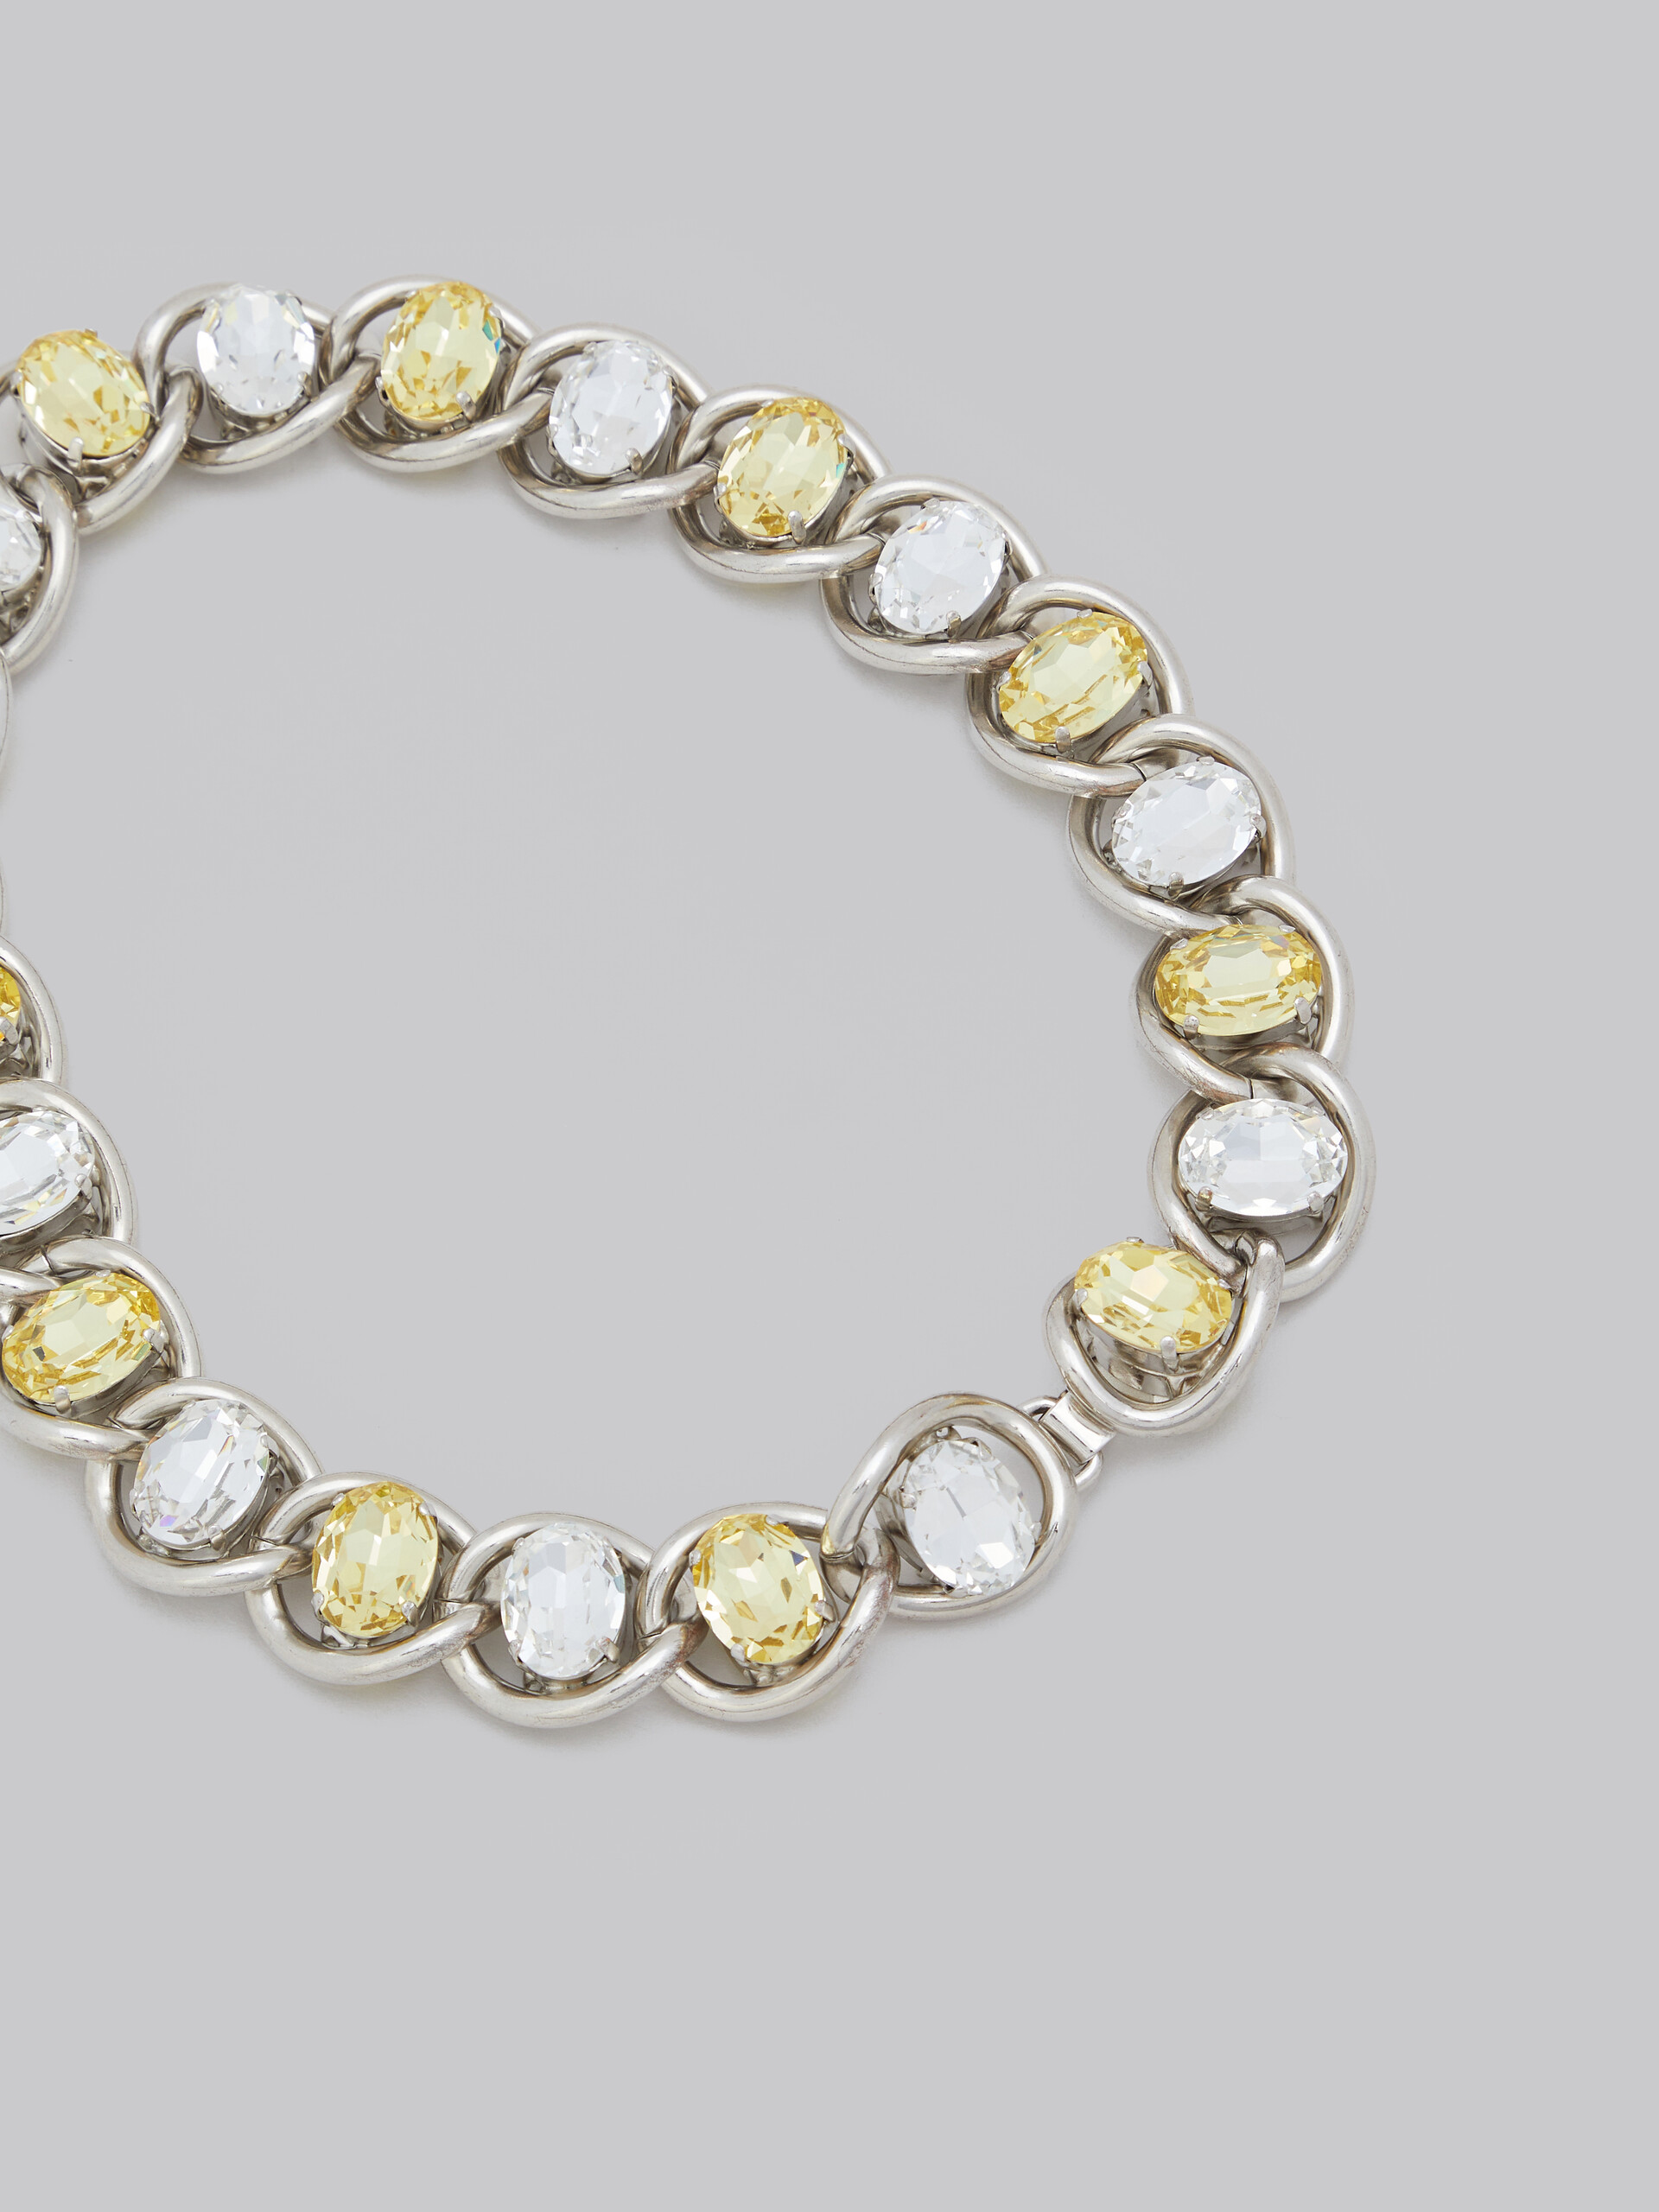 Collar grueso de cadena con strass transparente y amarillo - Collares - Image 4